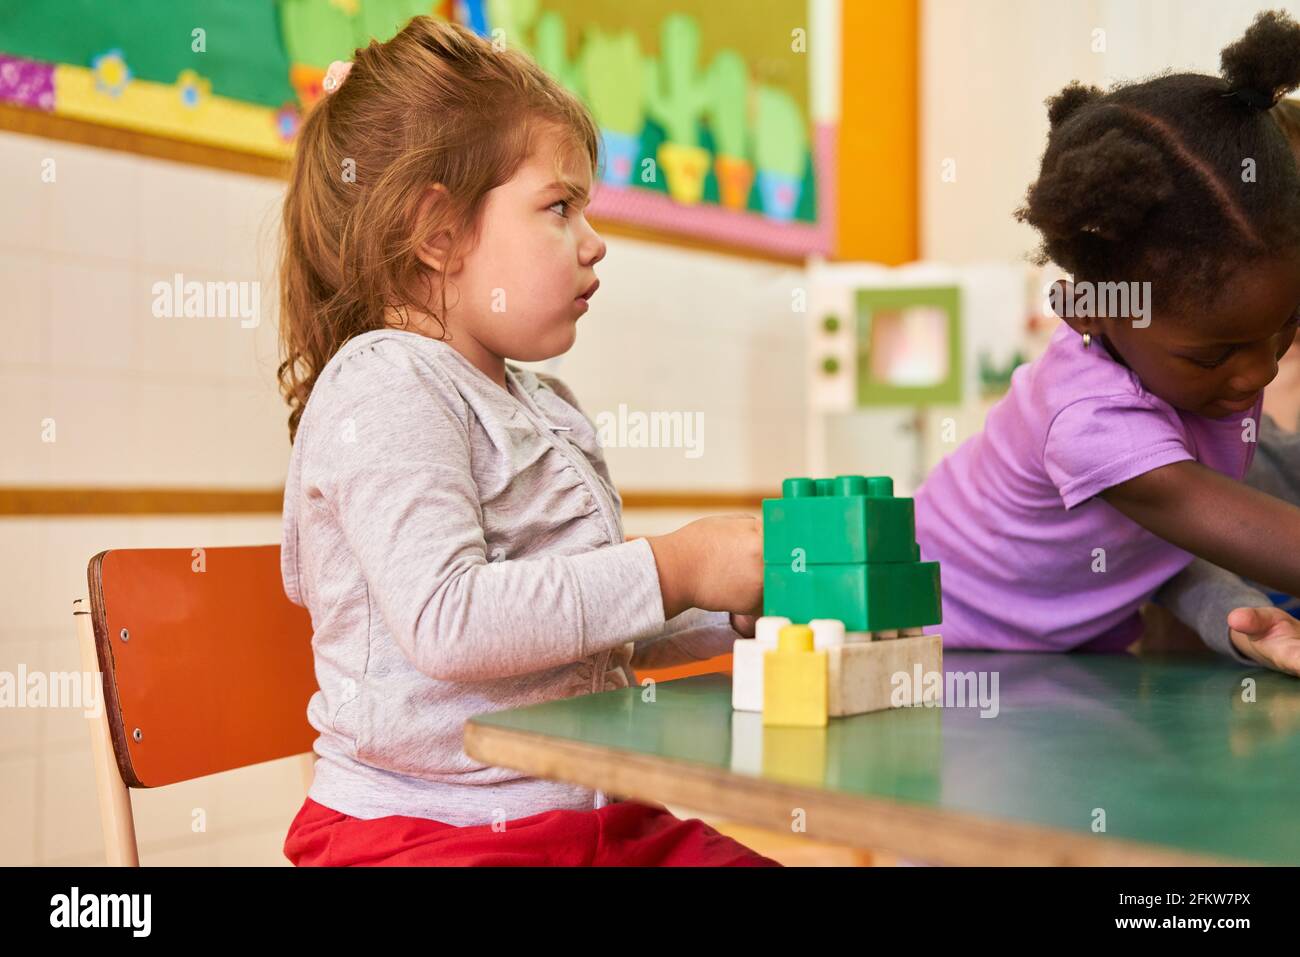 Mädchen im internationalen Kindergarten oder in der Vorschule spielen mit Bausteinen Am Tisch Stockfoto